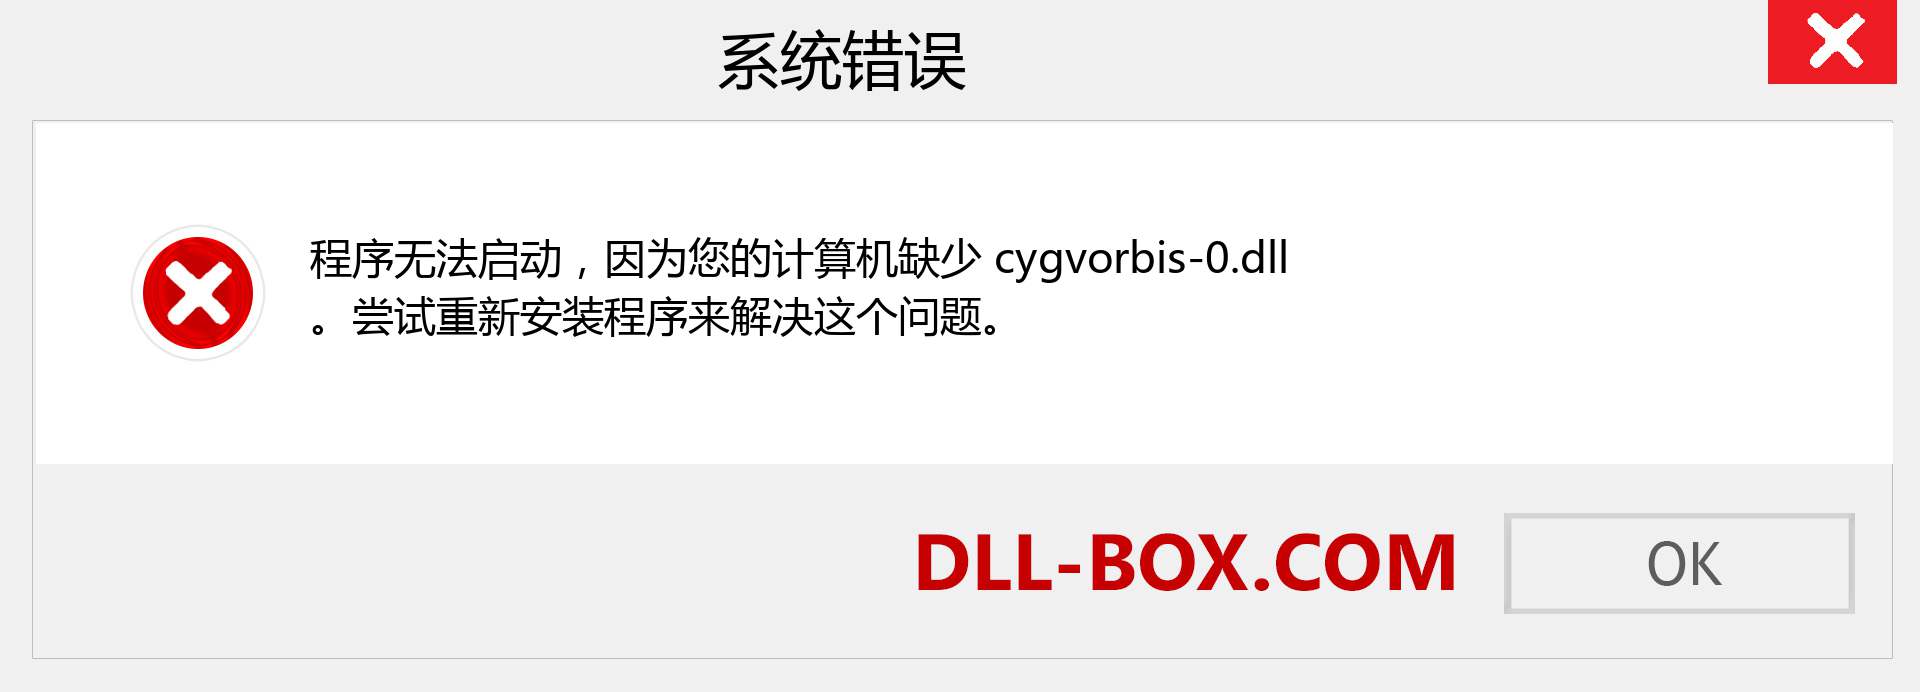 cygvorbis-0.dll 文件丢失？。 适用于 Windows 7、8、10 的下载 - 修复 Windows、照片、图像上的 cygvorbis-0 dll 丢失错误